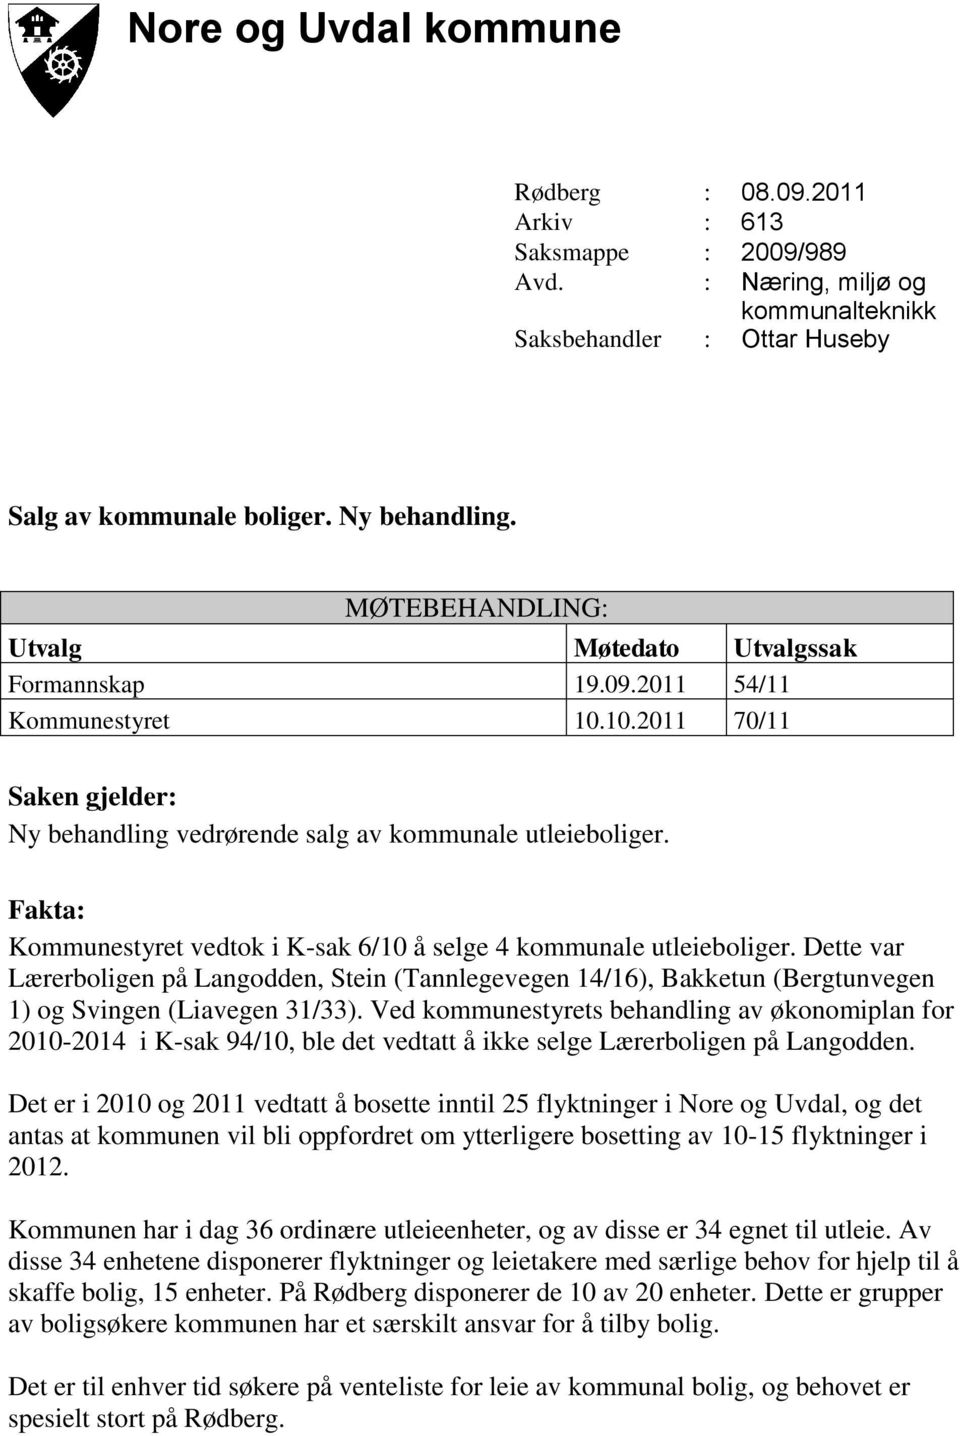 Fakta: Kommunestyret vedtok i K-sak 6/10 å selge 4 kommunale utleieboliger. Dette var Lærerboligen på Langodden, Stein (Tannlegevegen 14/16), Bakketun (Bergtunvegen 1) og Svingen (Liavegen 31/33).